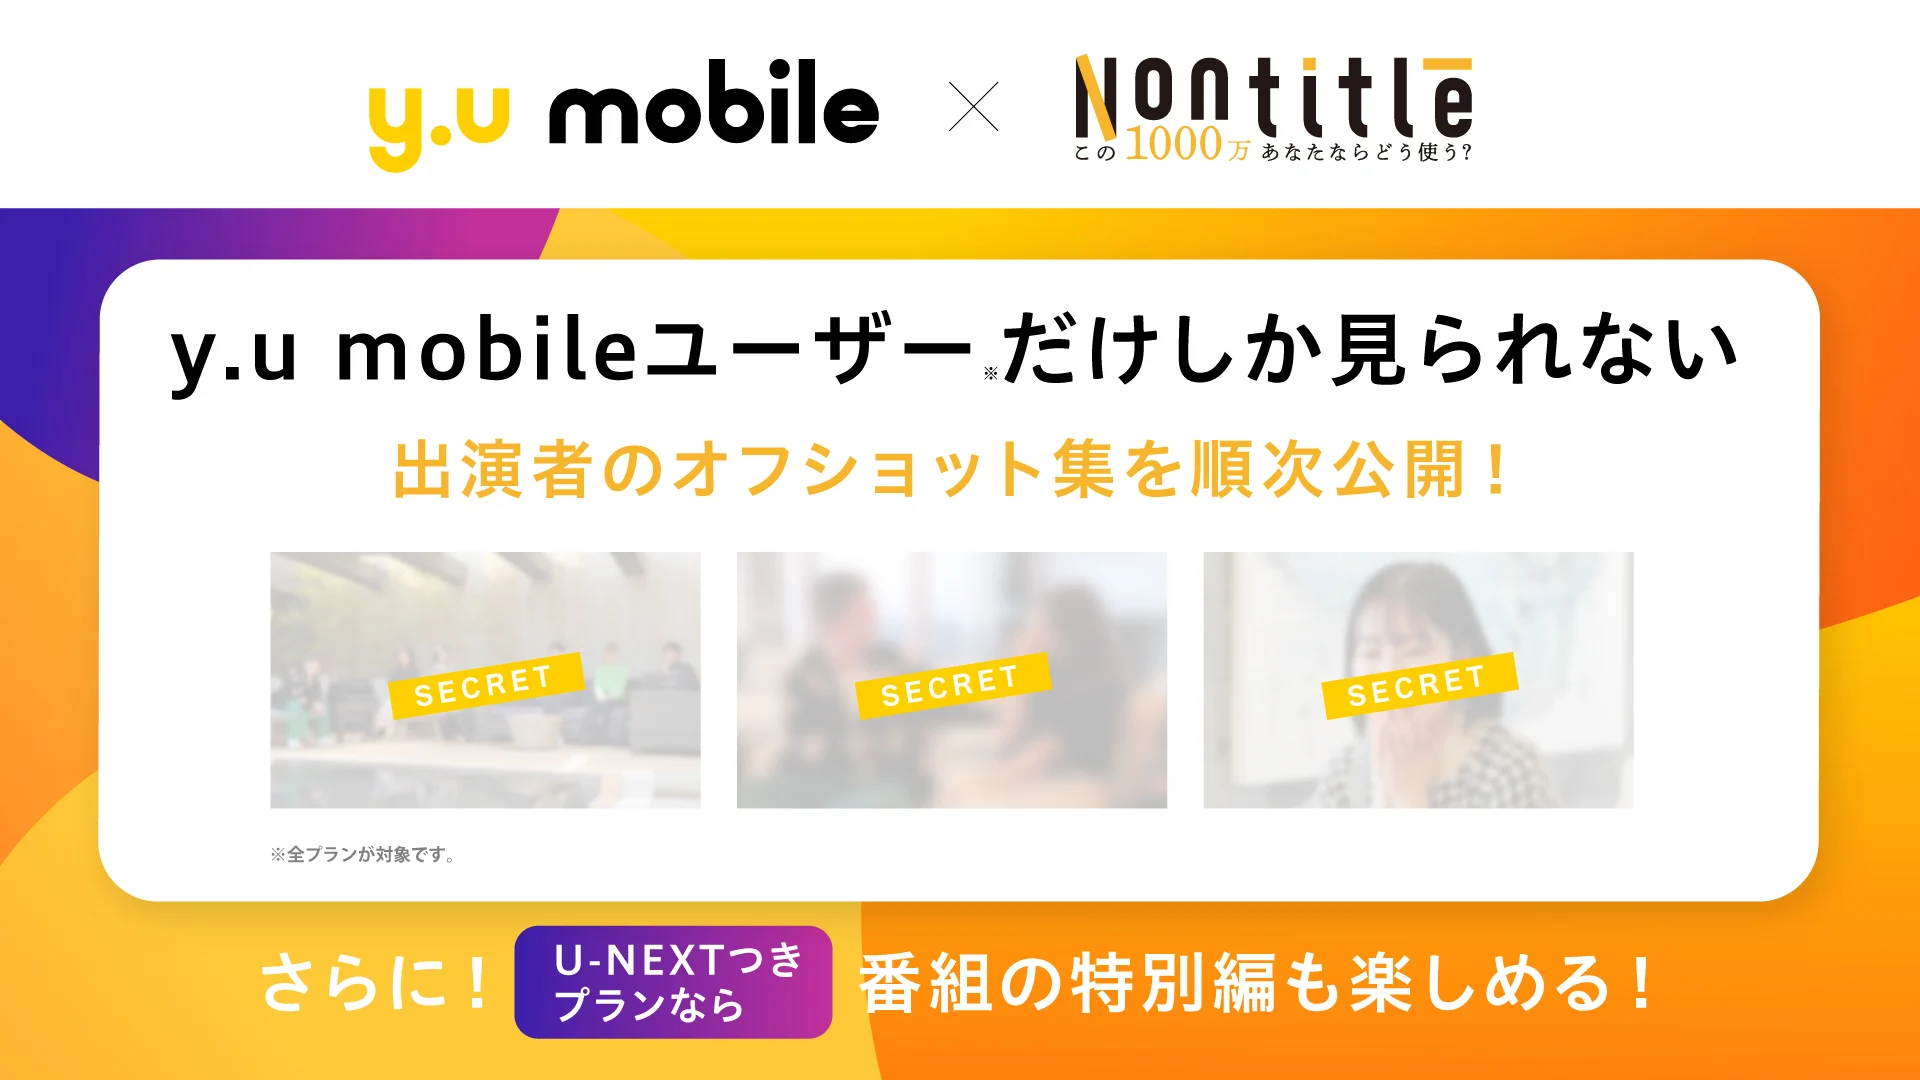 y.u mobile_Nontitle_デジタルコンテンツ